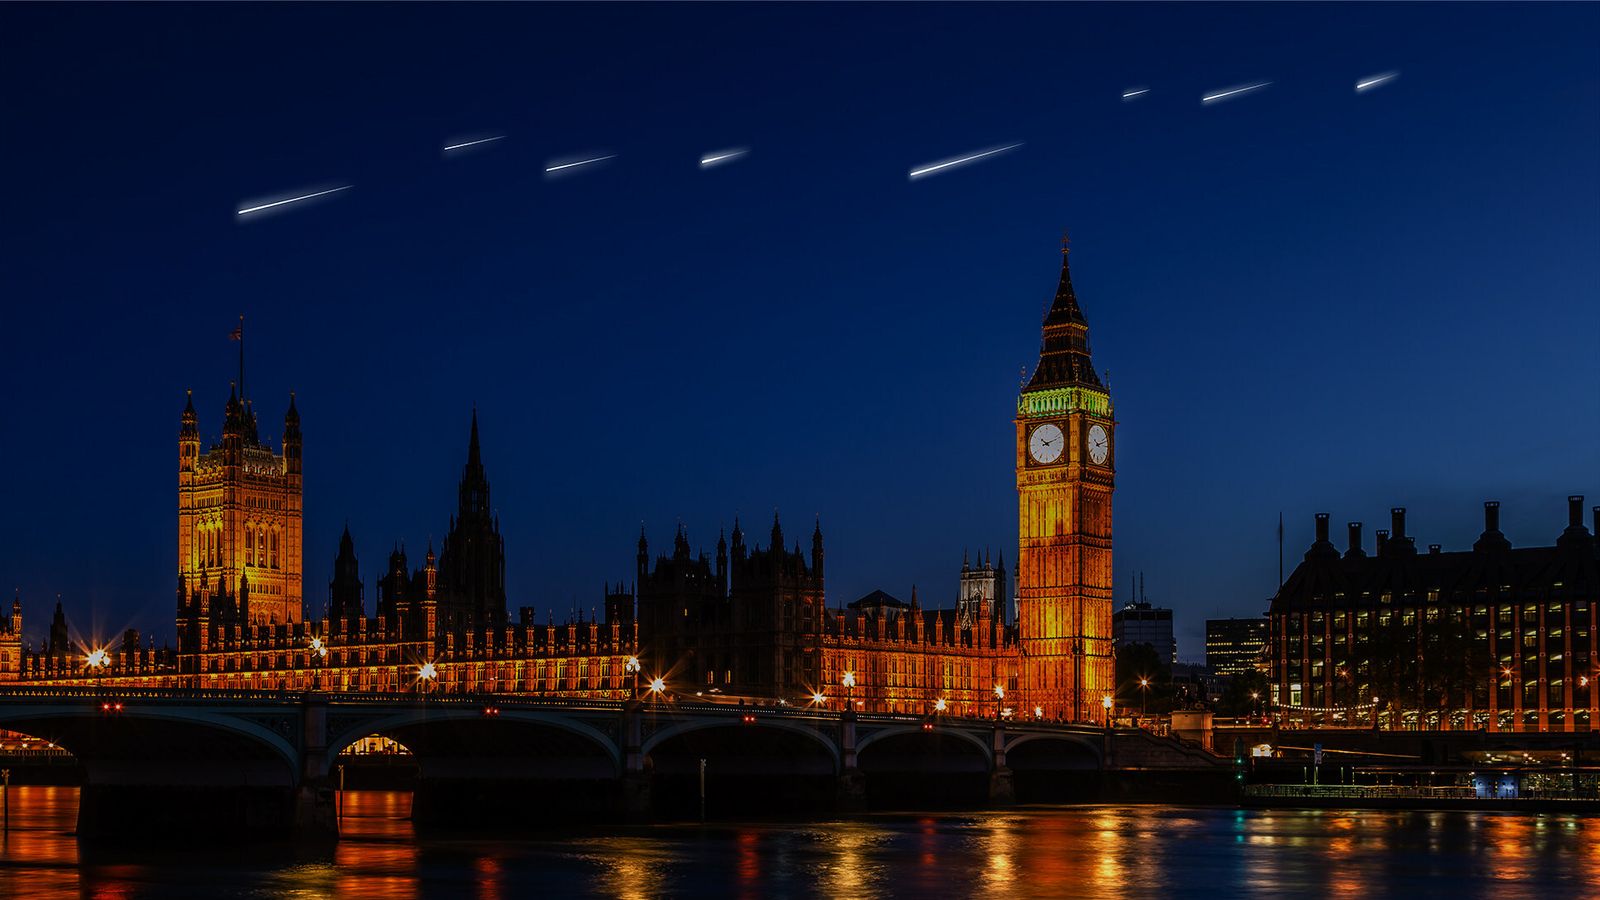 Sky Canvas: Uma representação artística de estrelas cadentes artificiais caindo sobre o Big Ben e as Casas do Parlamento.